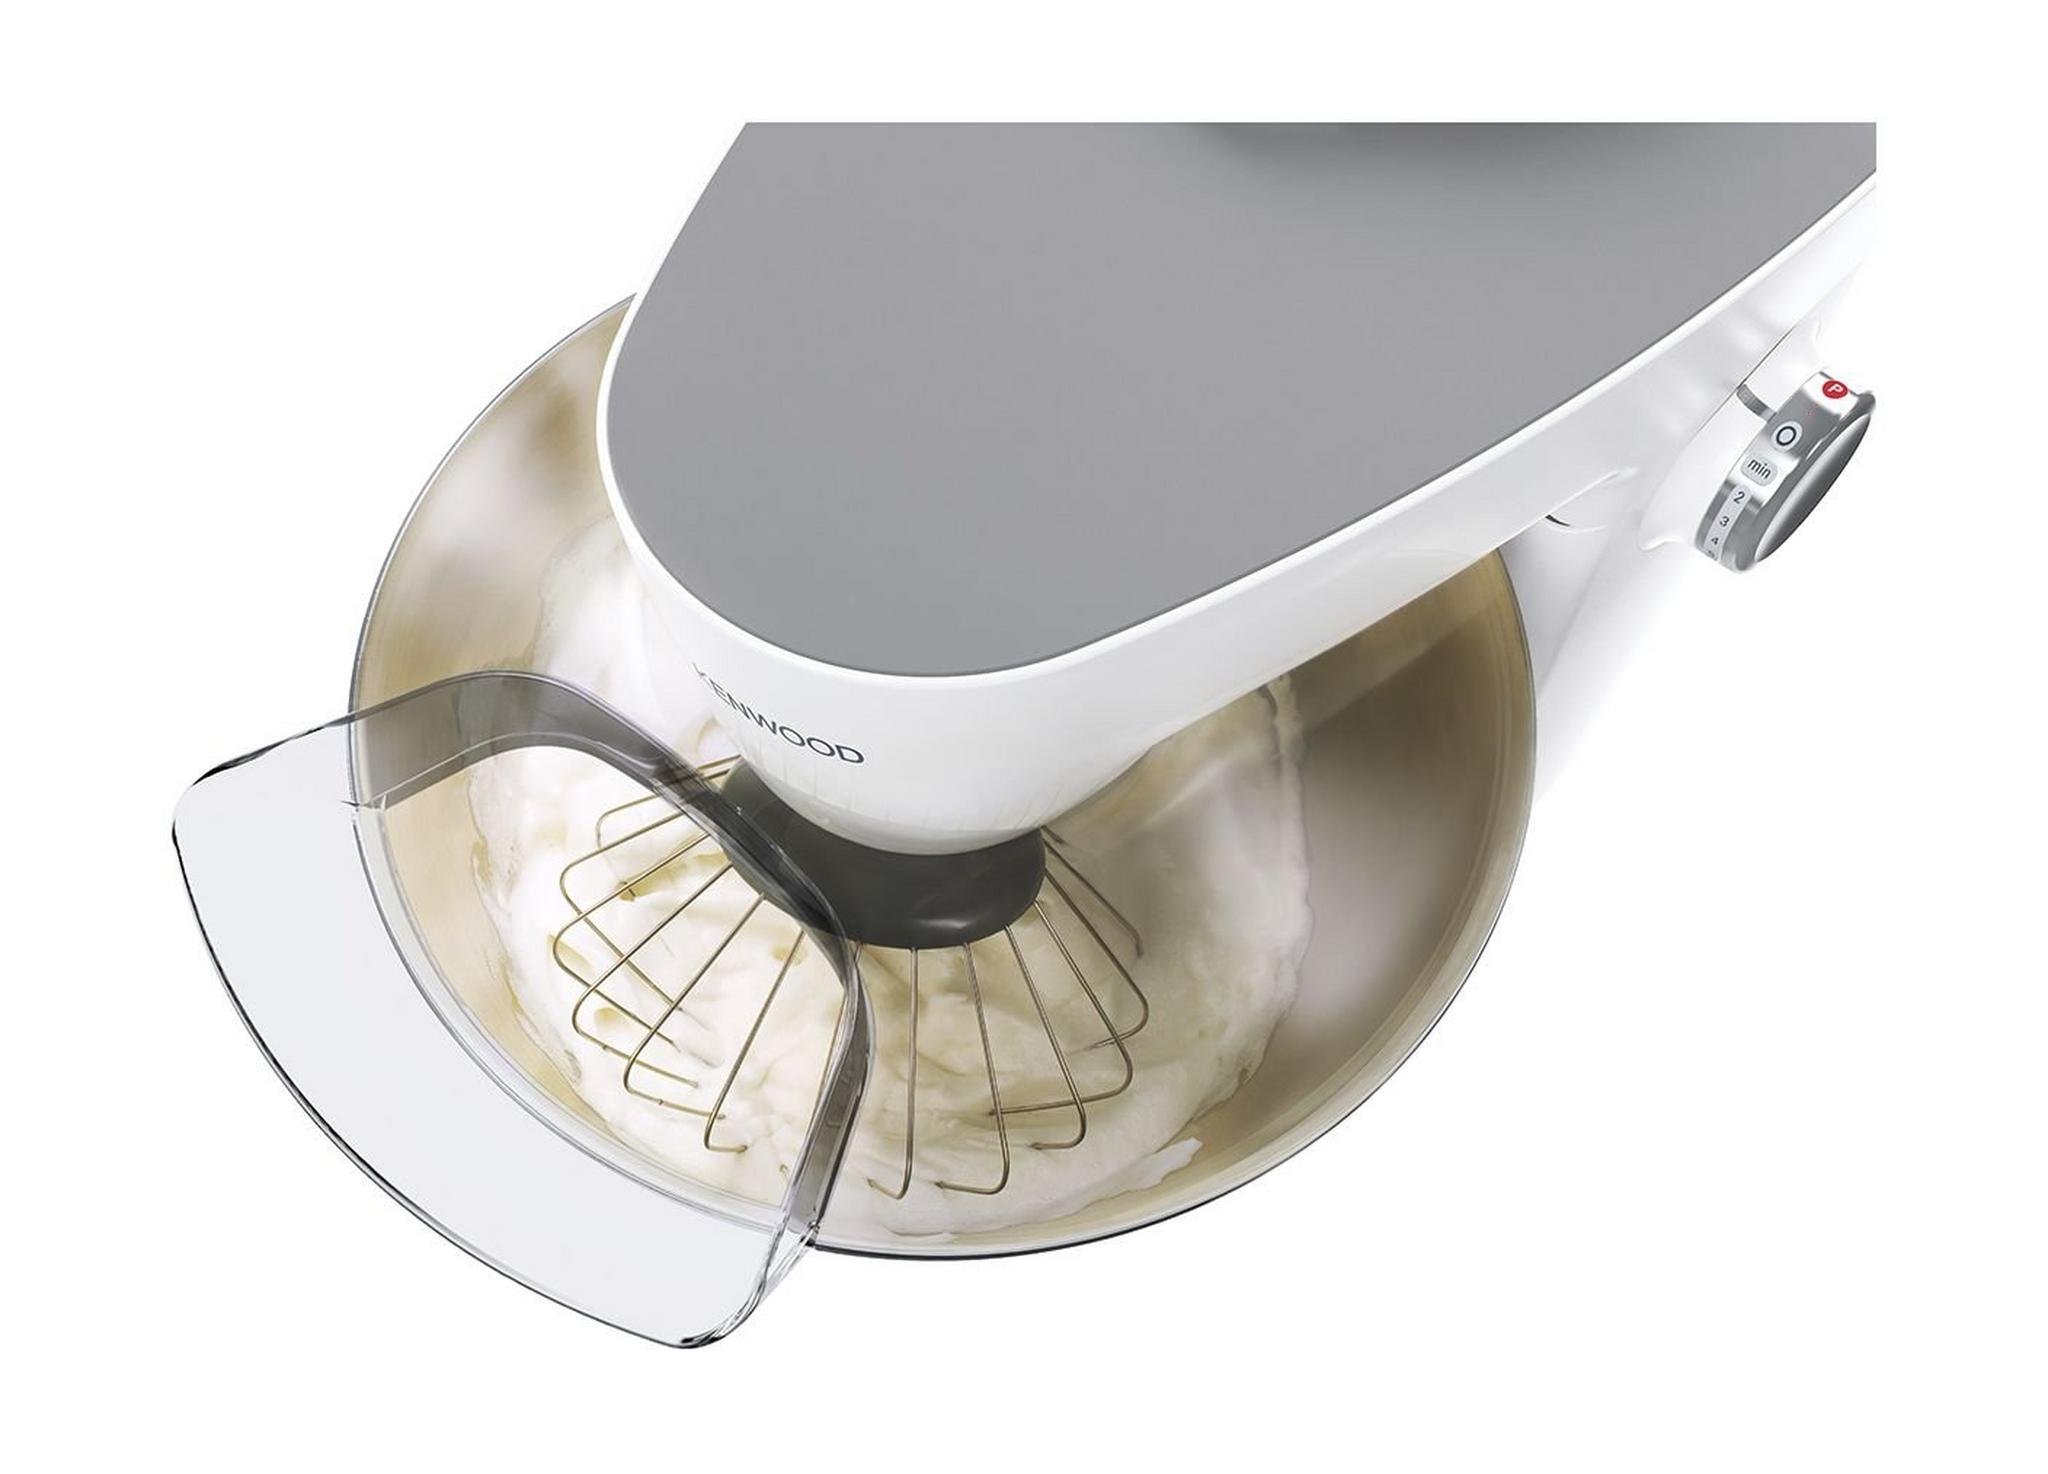 ماكينة مطبخ ملتي ون من كينوود – قوة ١٠٠٠ واط – سعة ٤.٣ لتر – فضي/أبيض (KHH326WH)